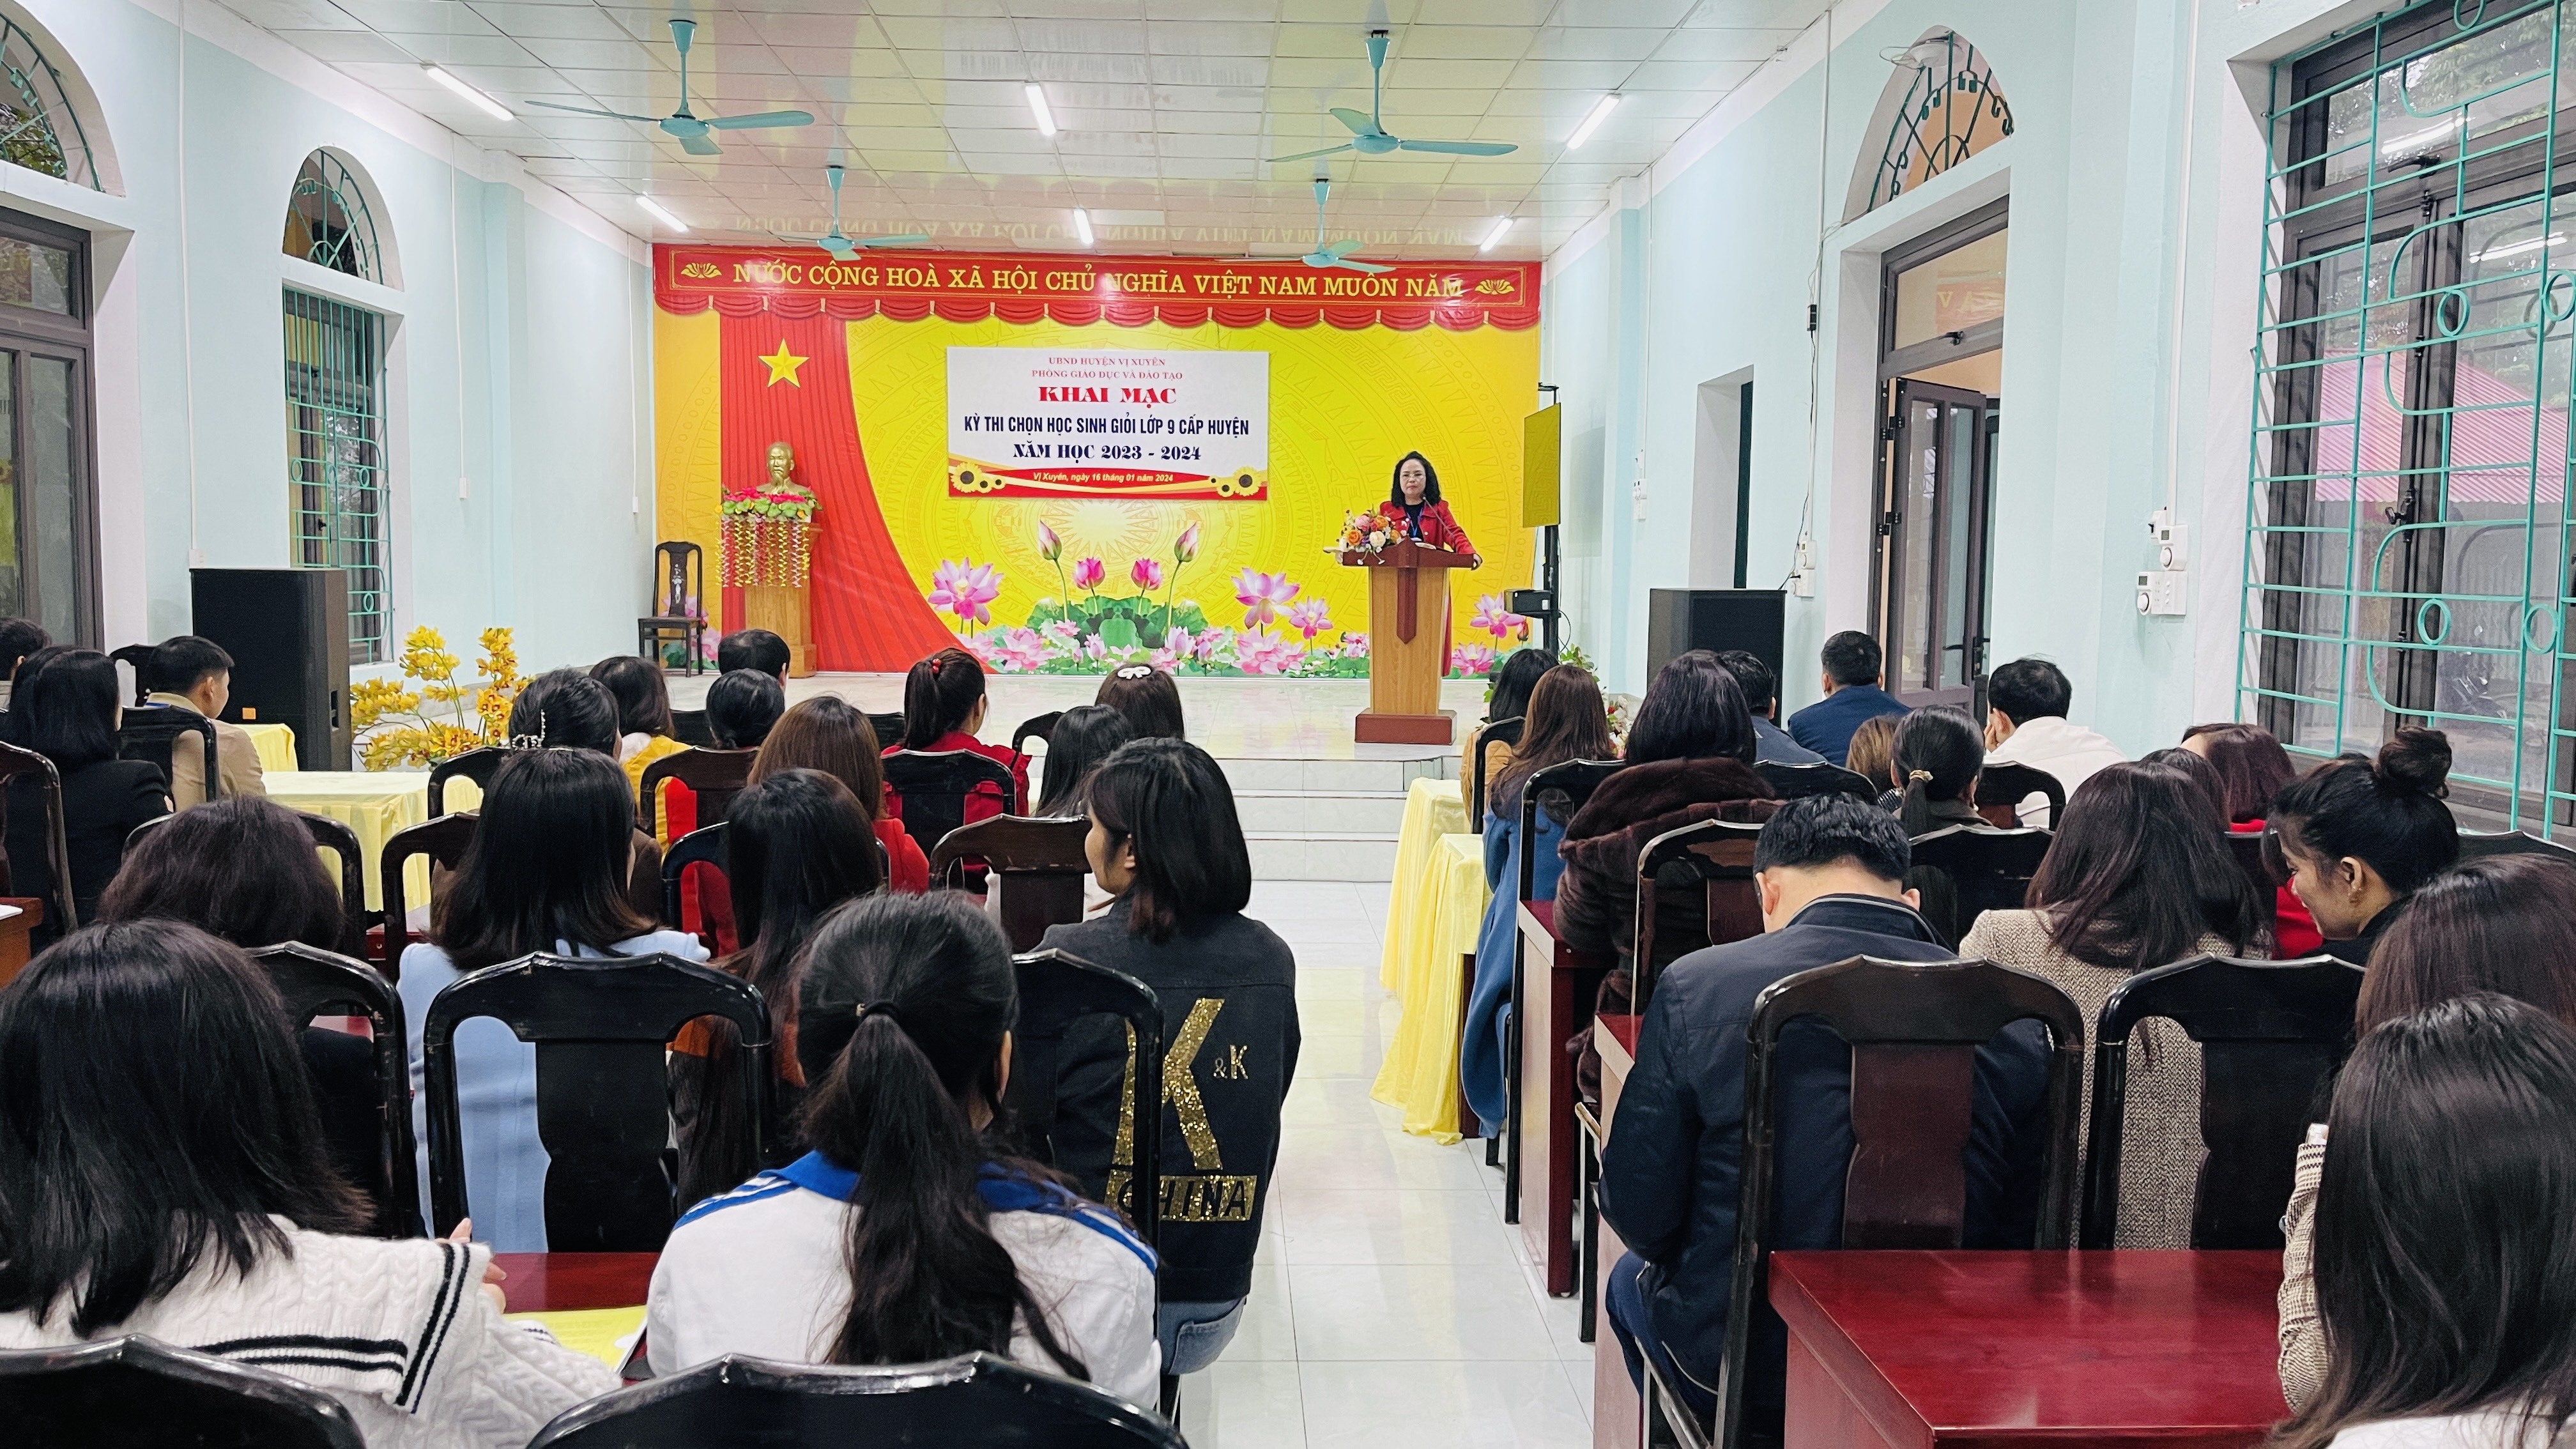 Vị Xuyên khai mạc kỳ thi học sinh giỏi lớp 9 cấp huyện